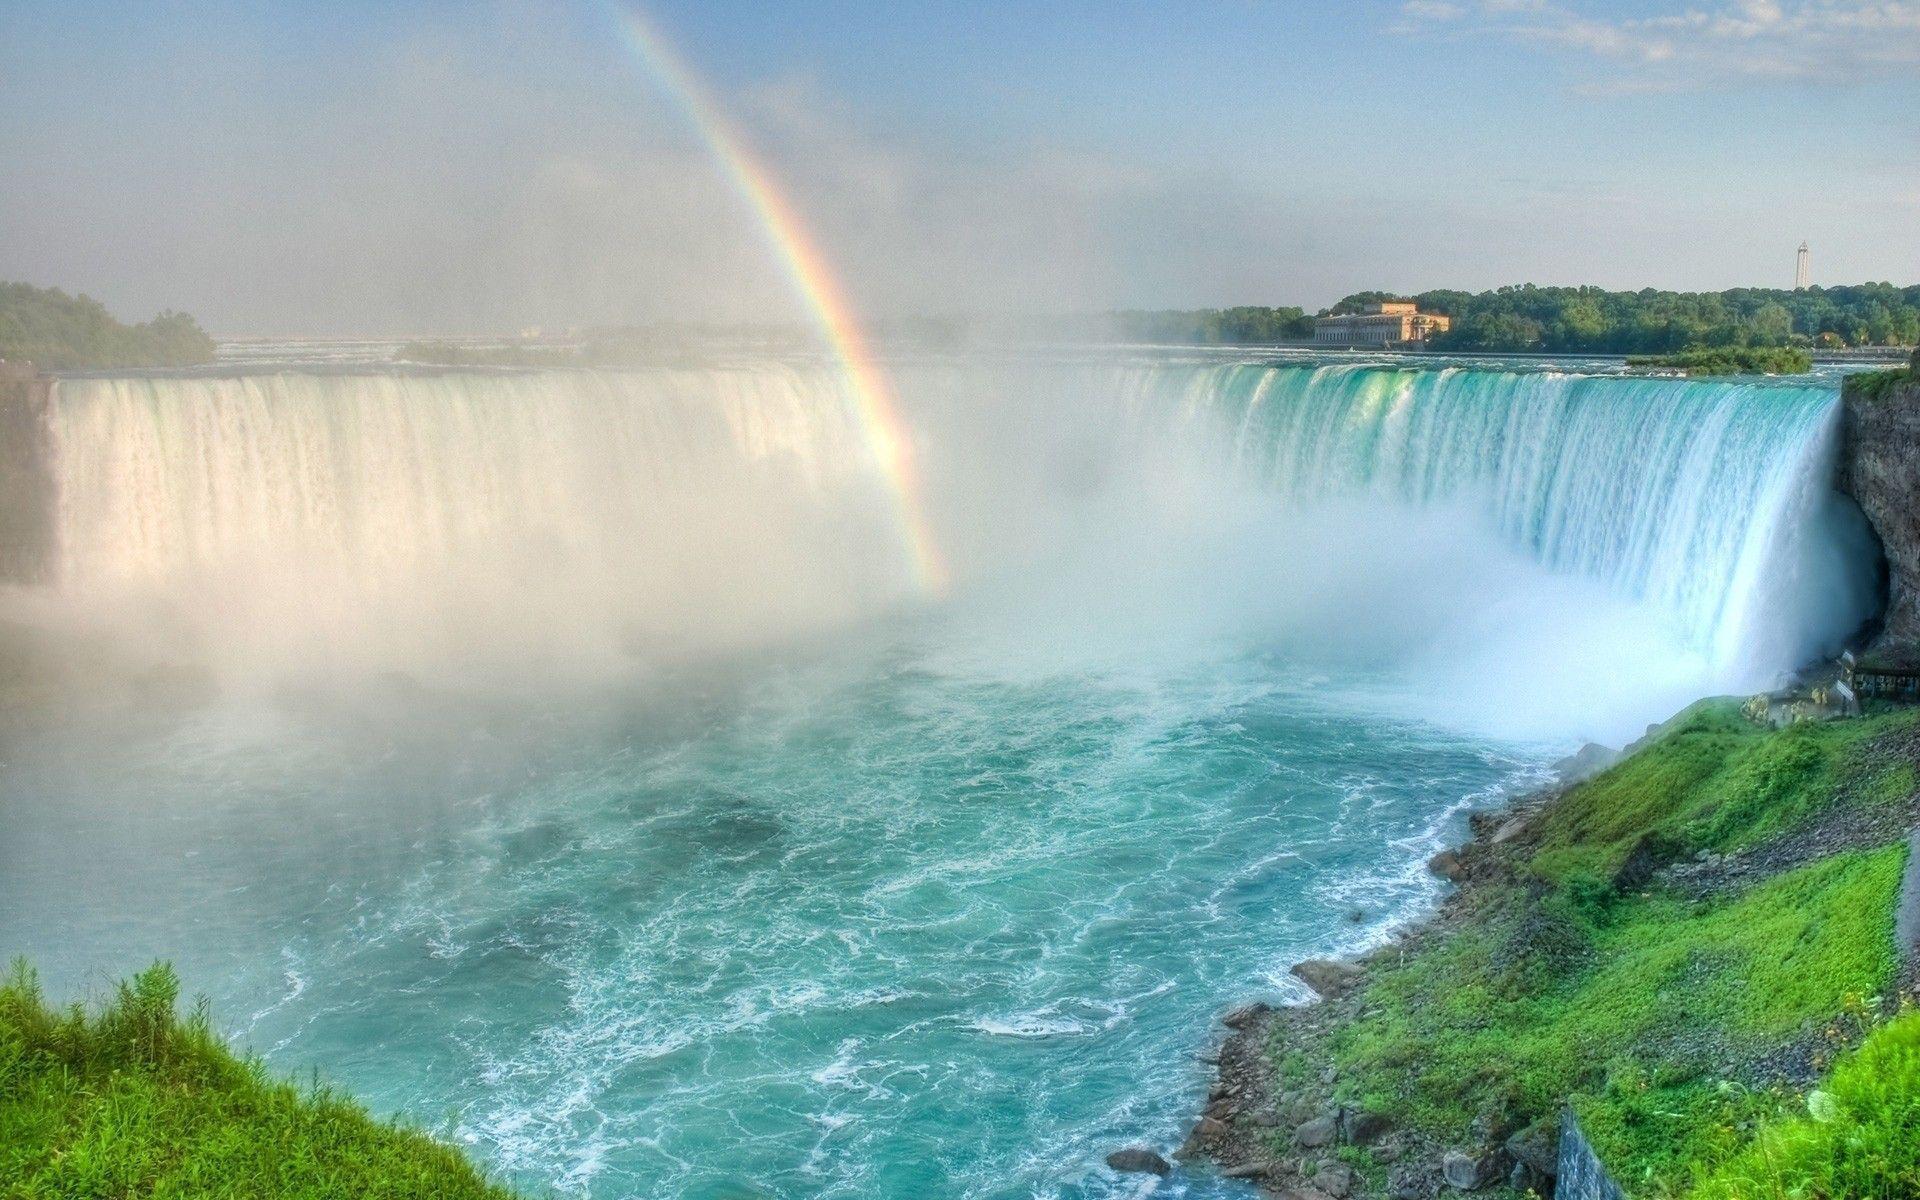 Waterfall with beautiful rainbow